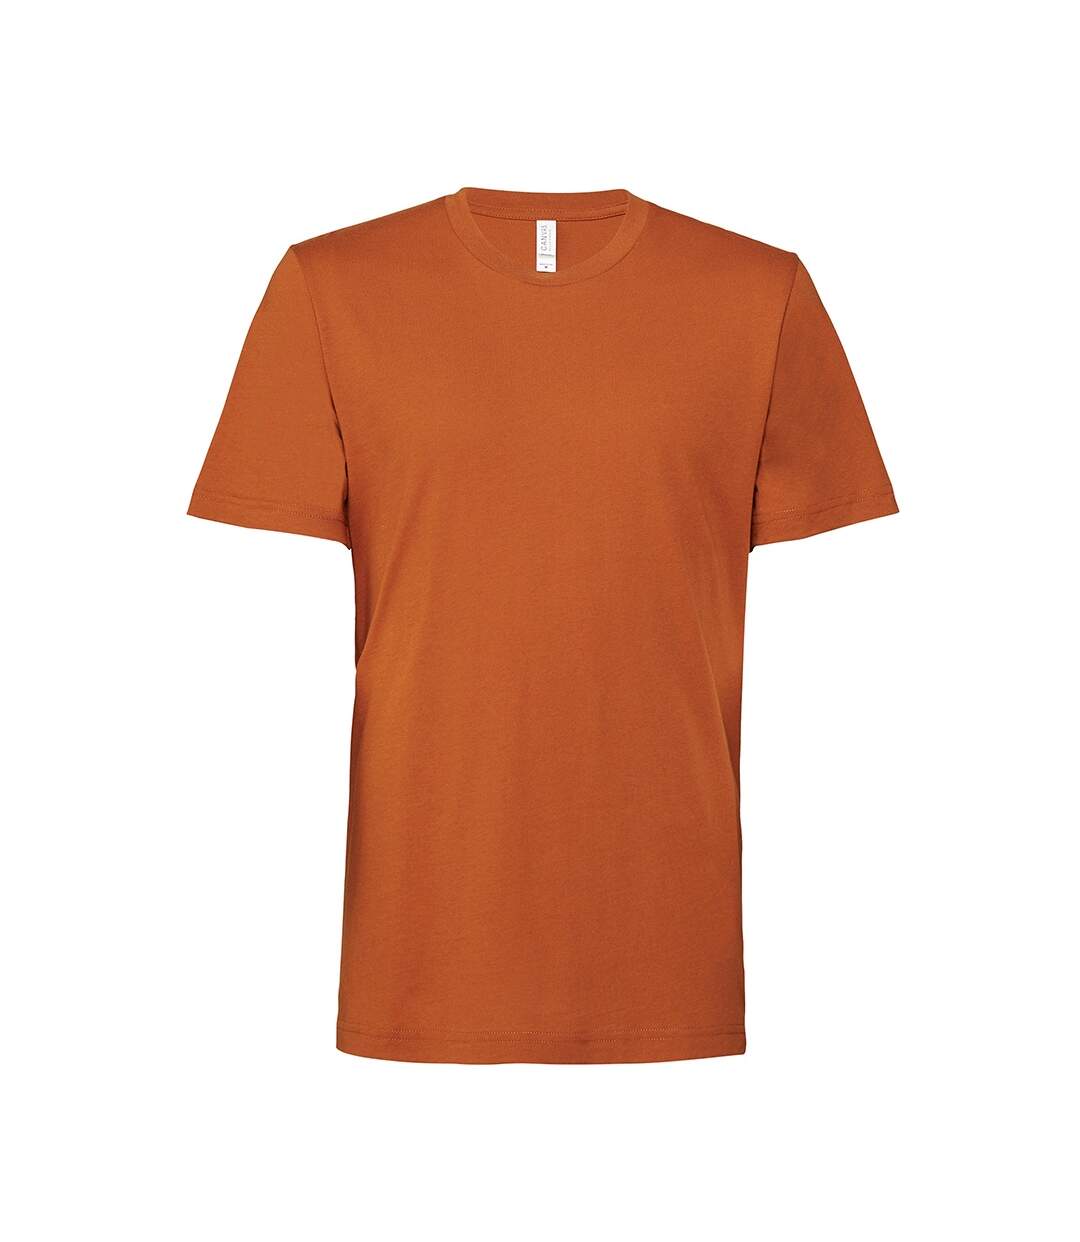 Bella + Canvas - T-shirt - Unisexe (Orange) - UTPC3869